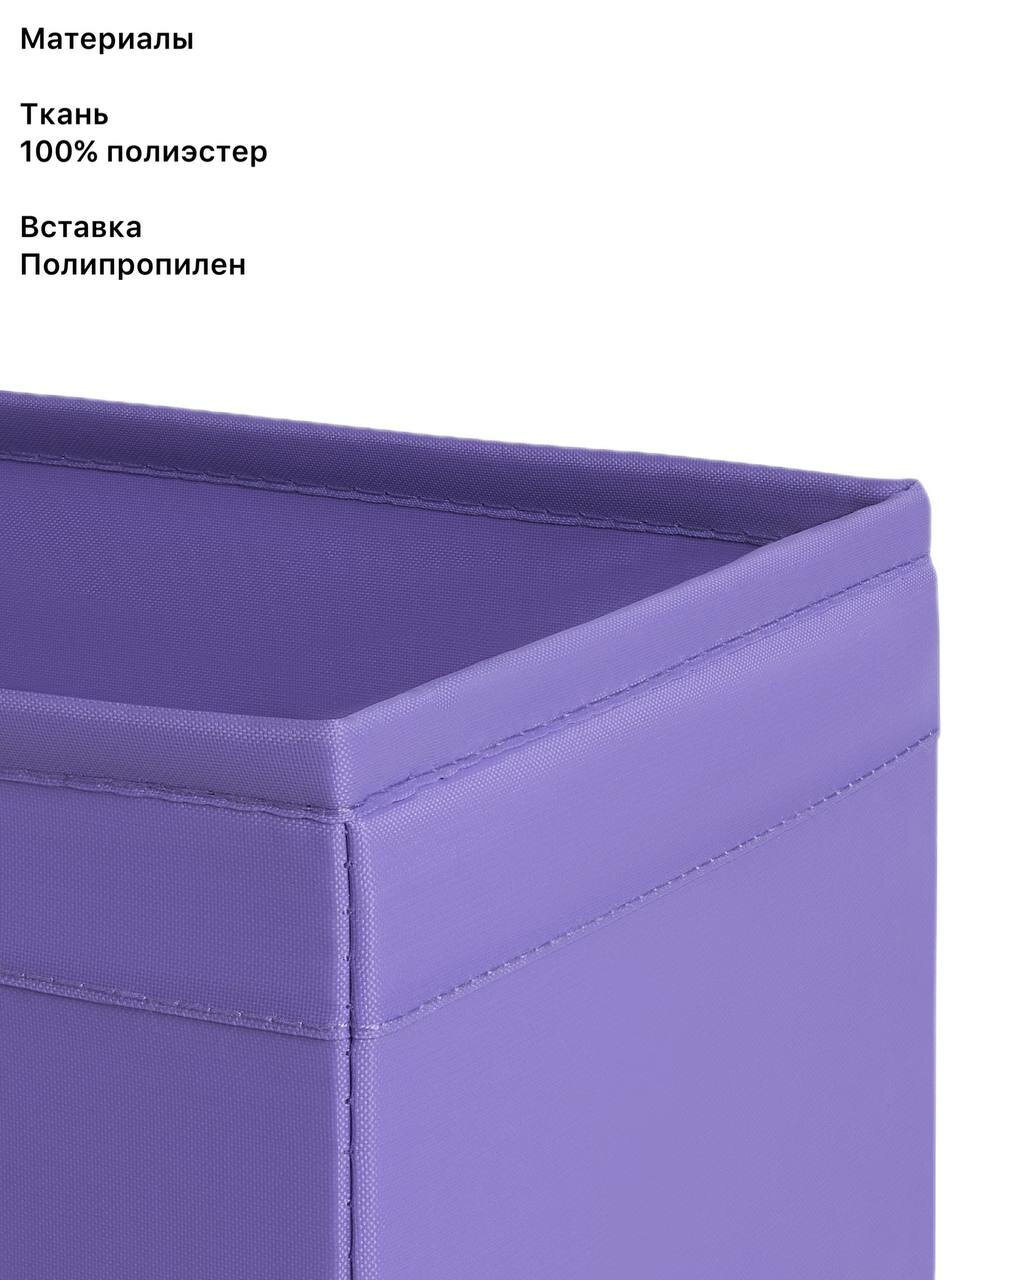 Коробки для хранения икеа скубб, тканевые, 6 шт., фиолетовый - фотография № 3